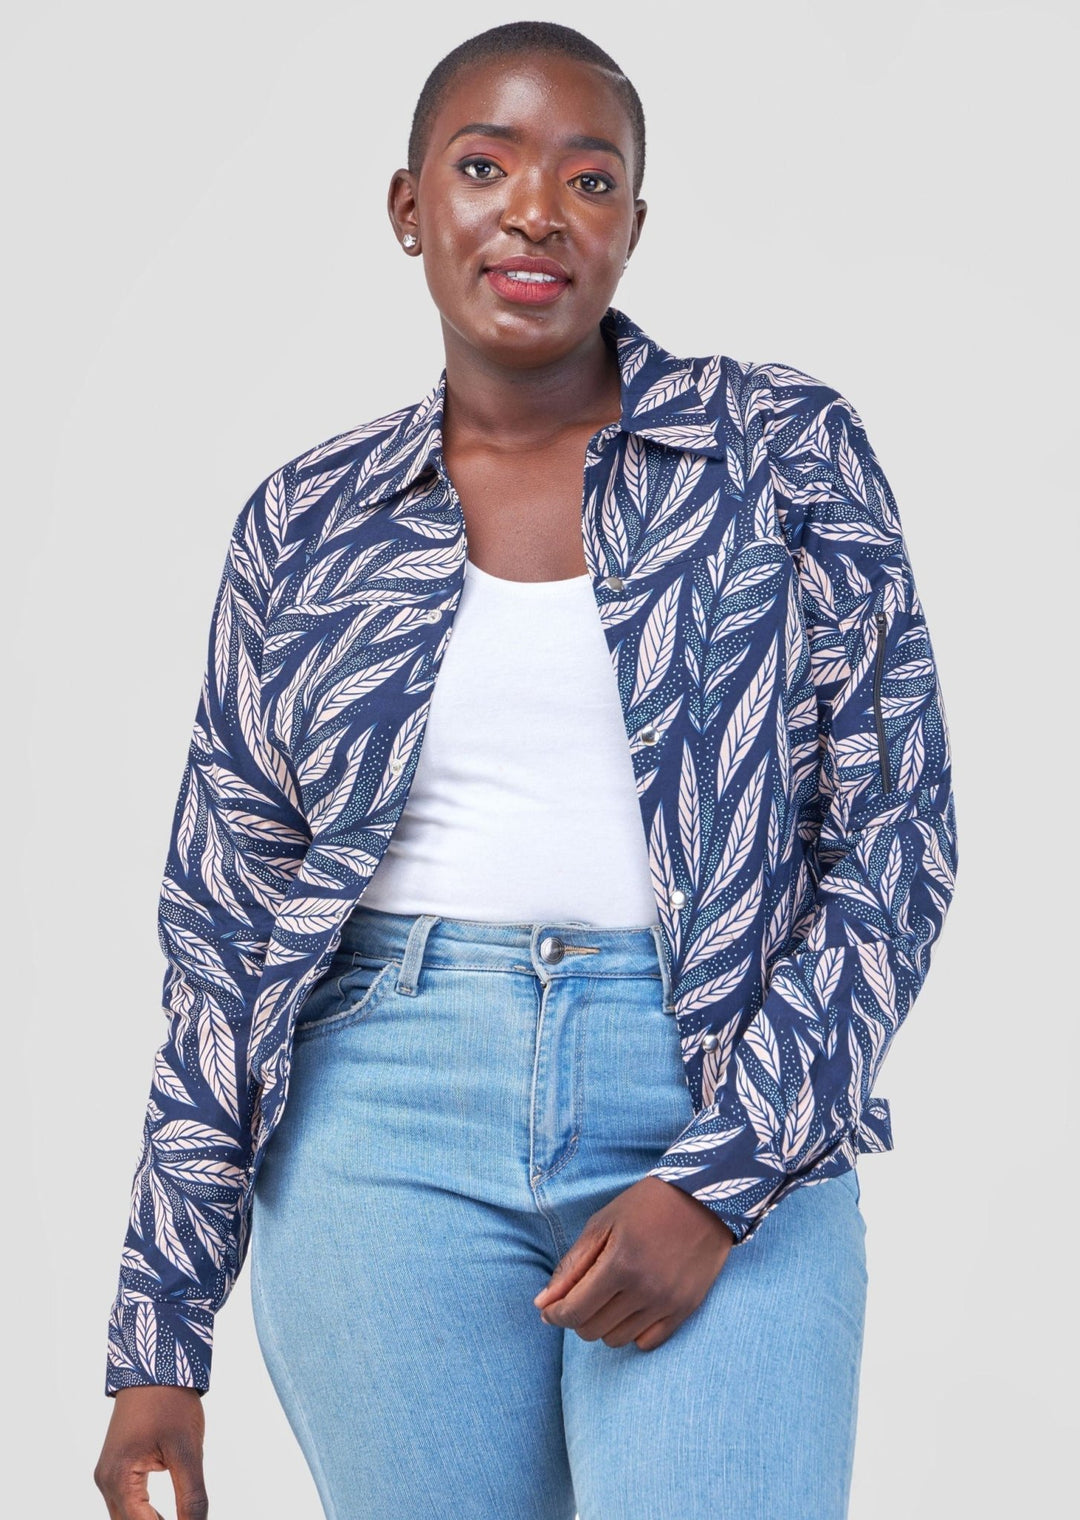 Jacke ‚Mwangaza‘ für 70 € - mikono.africa Jacken aus Kenia bunte Bomberjacke Partyjacke faire sozial nachhaltig designed in Kenia